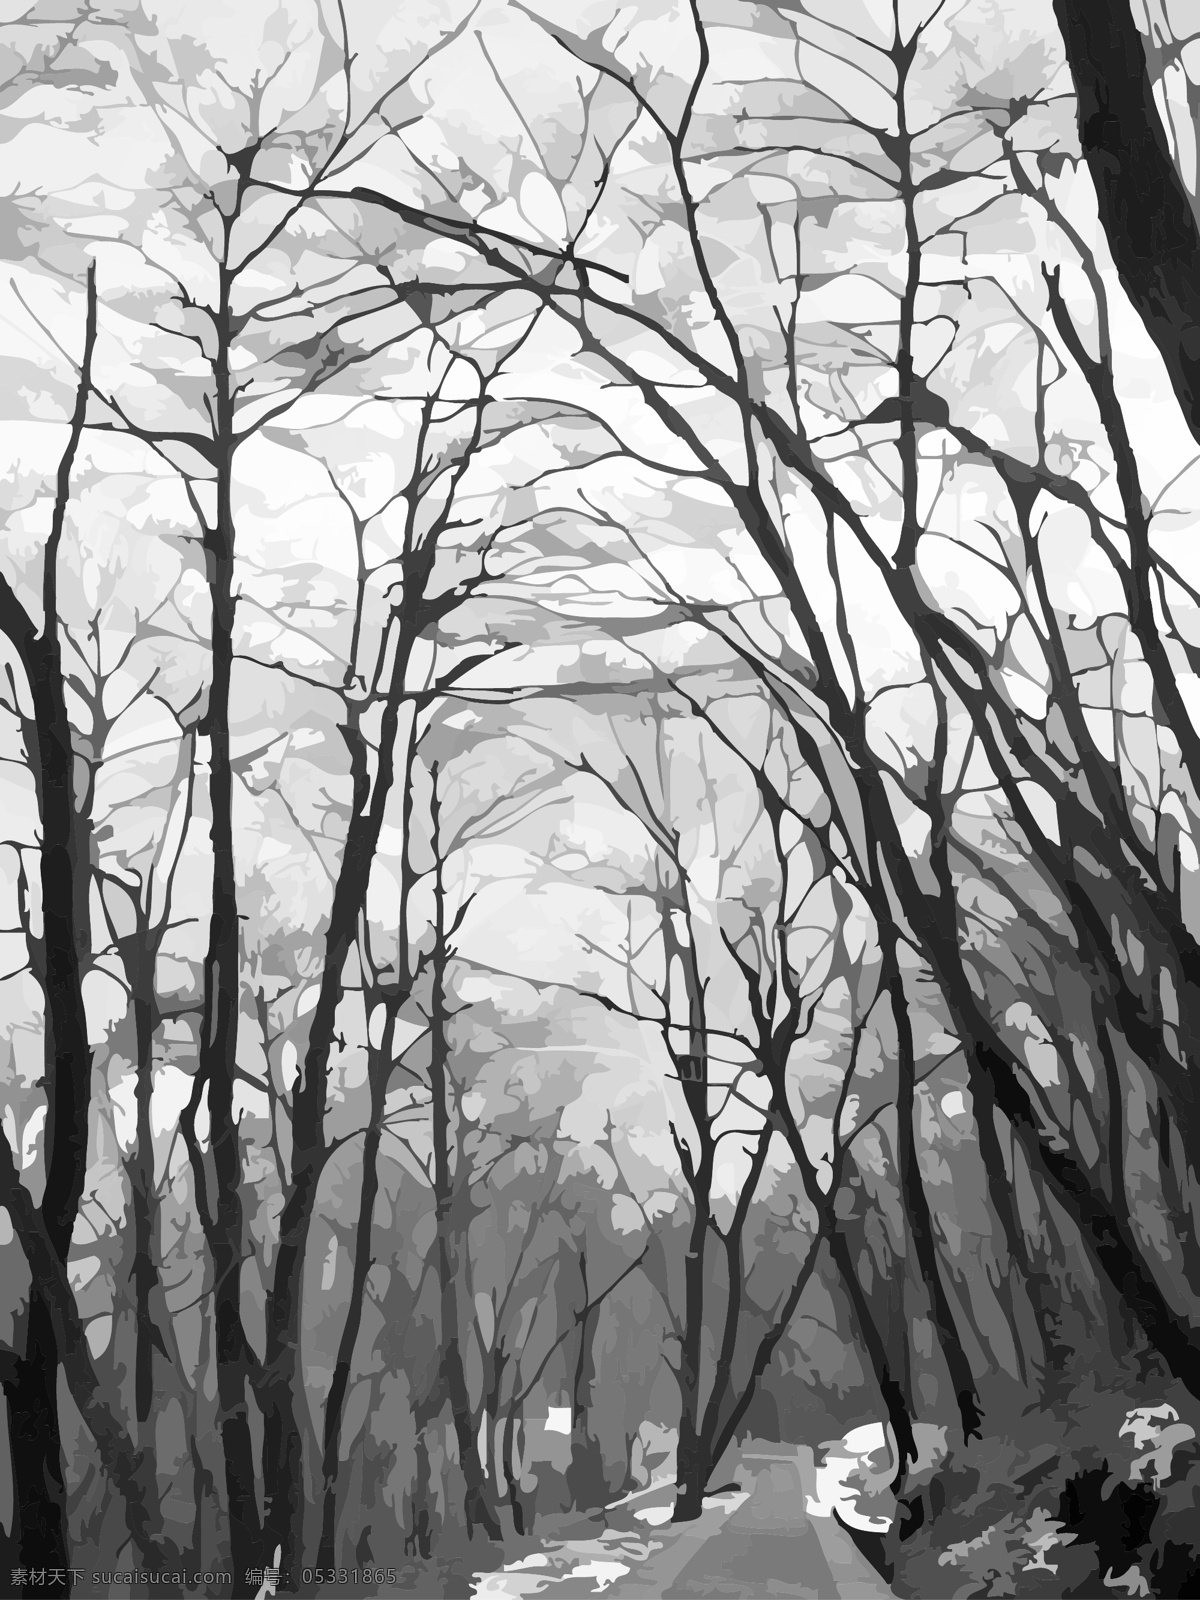 矢量 高清 冬季 树林 插画 枯树枝 黑白 元素 清晰 文艺 树枝 小路